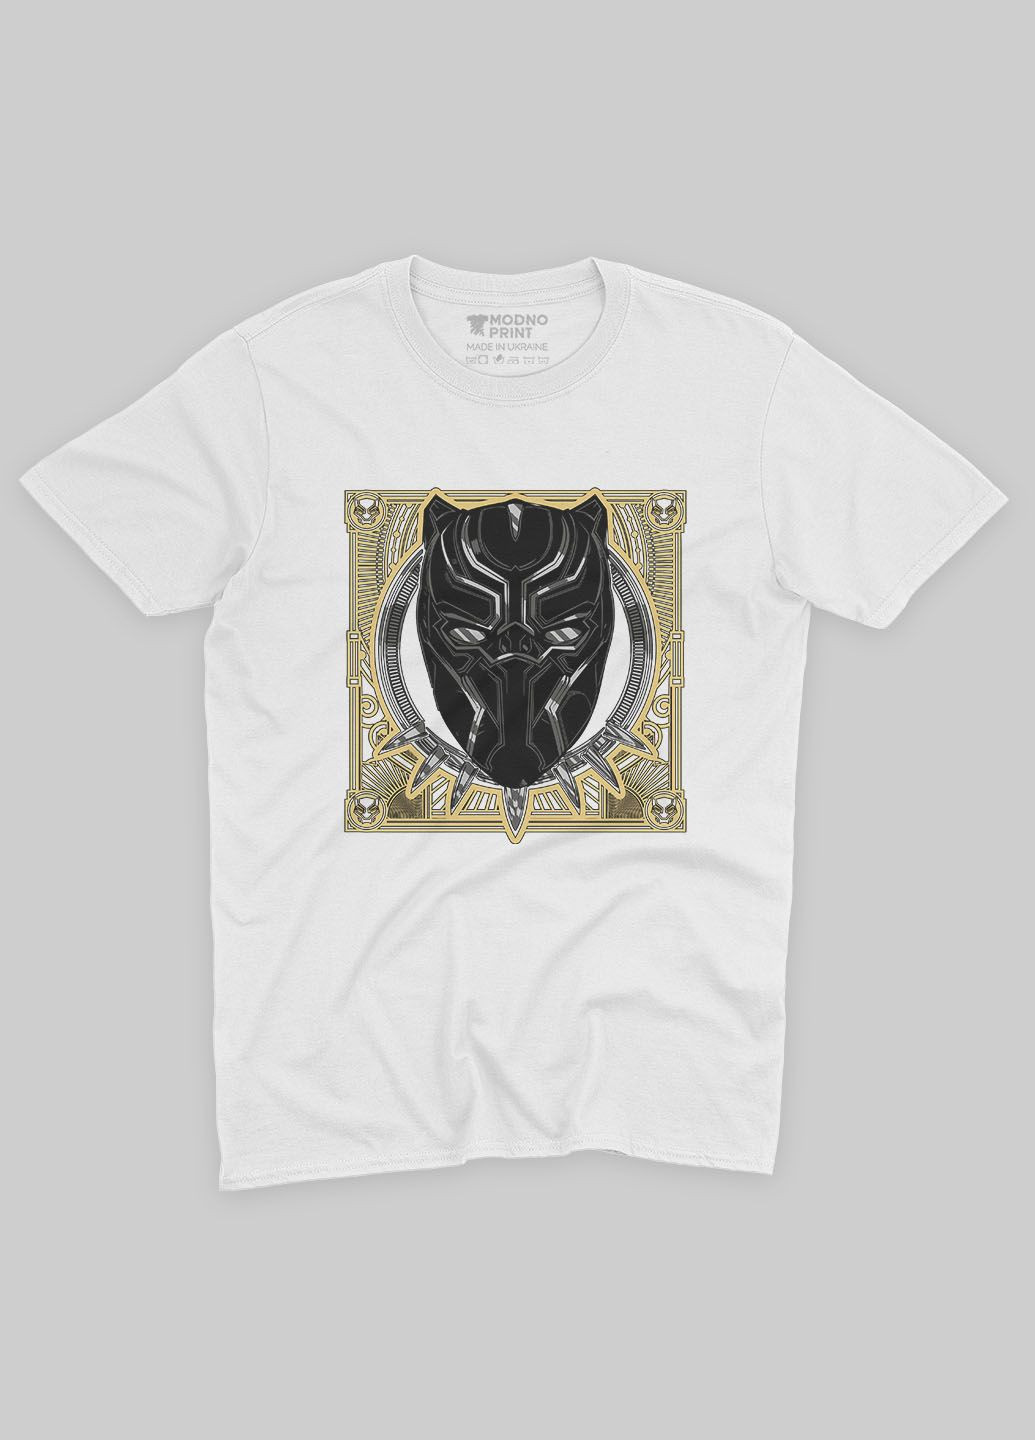 Белая демисезонная футболка для мальчика с принтом супергероя - черная пантера (ts001-1-whi-006-027-003-b) Modno